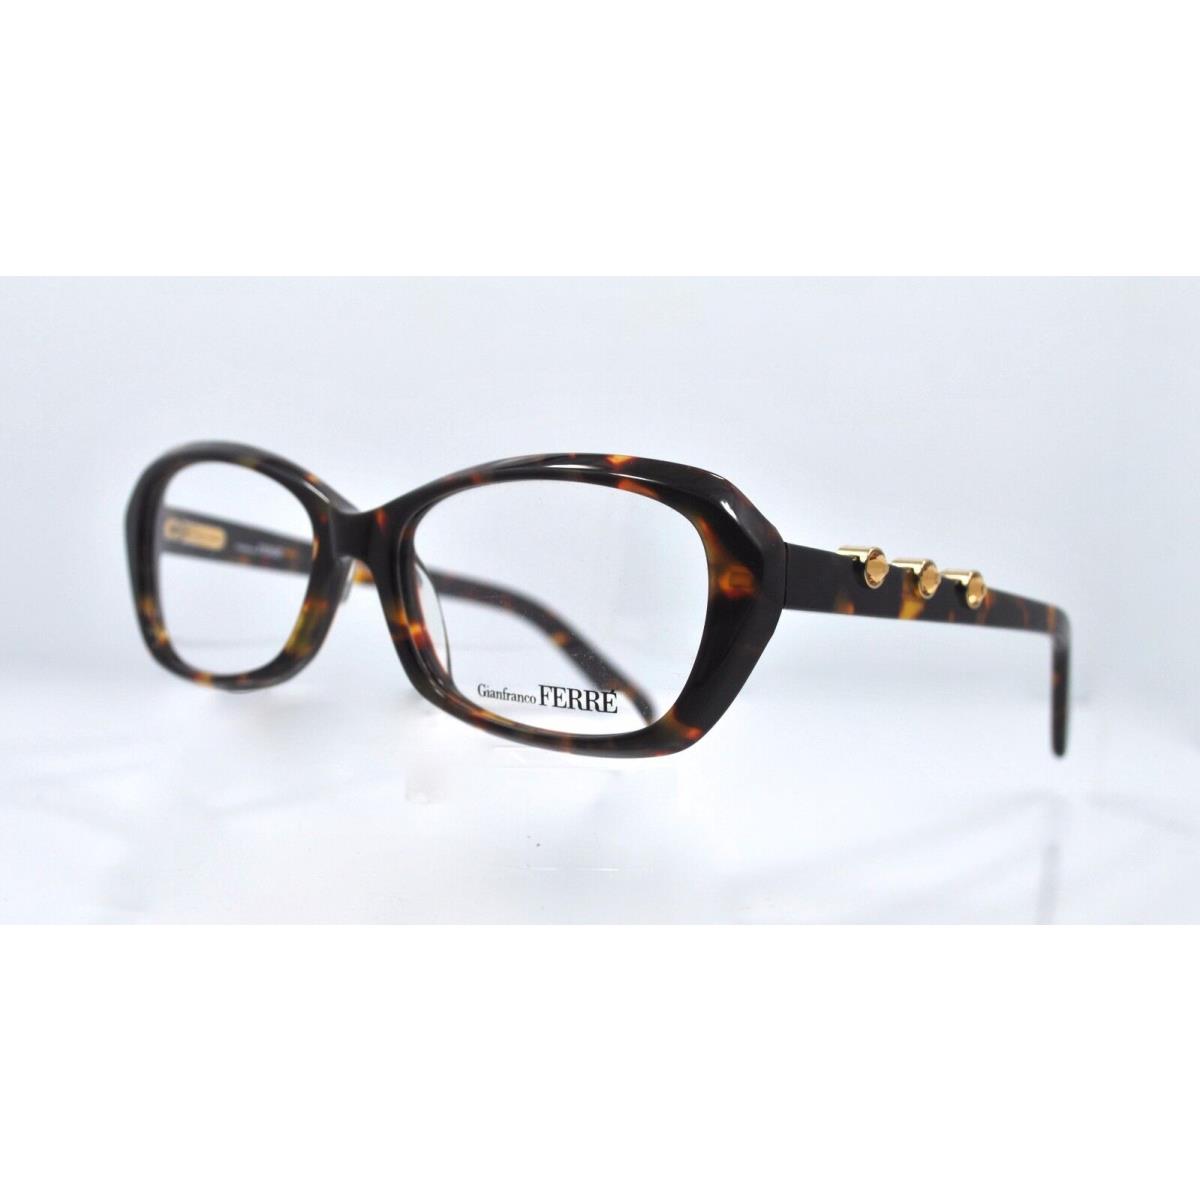 GF Ferre GF04103 Eyeglasses Frames